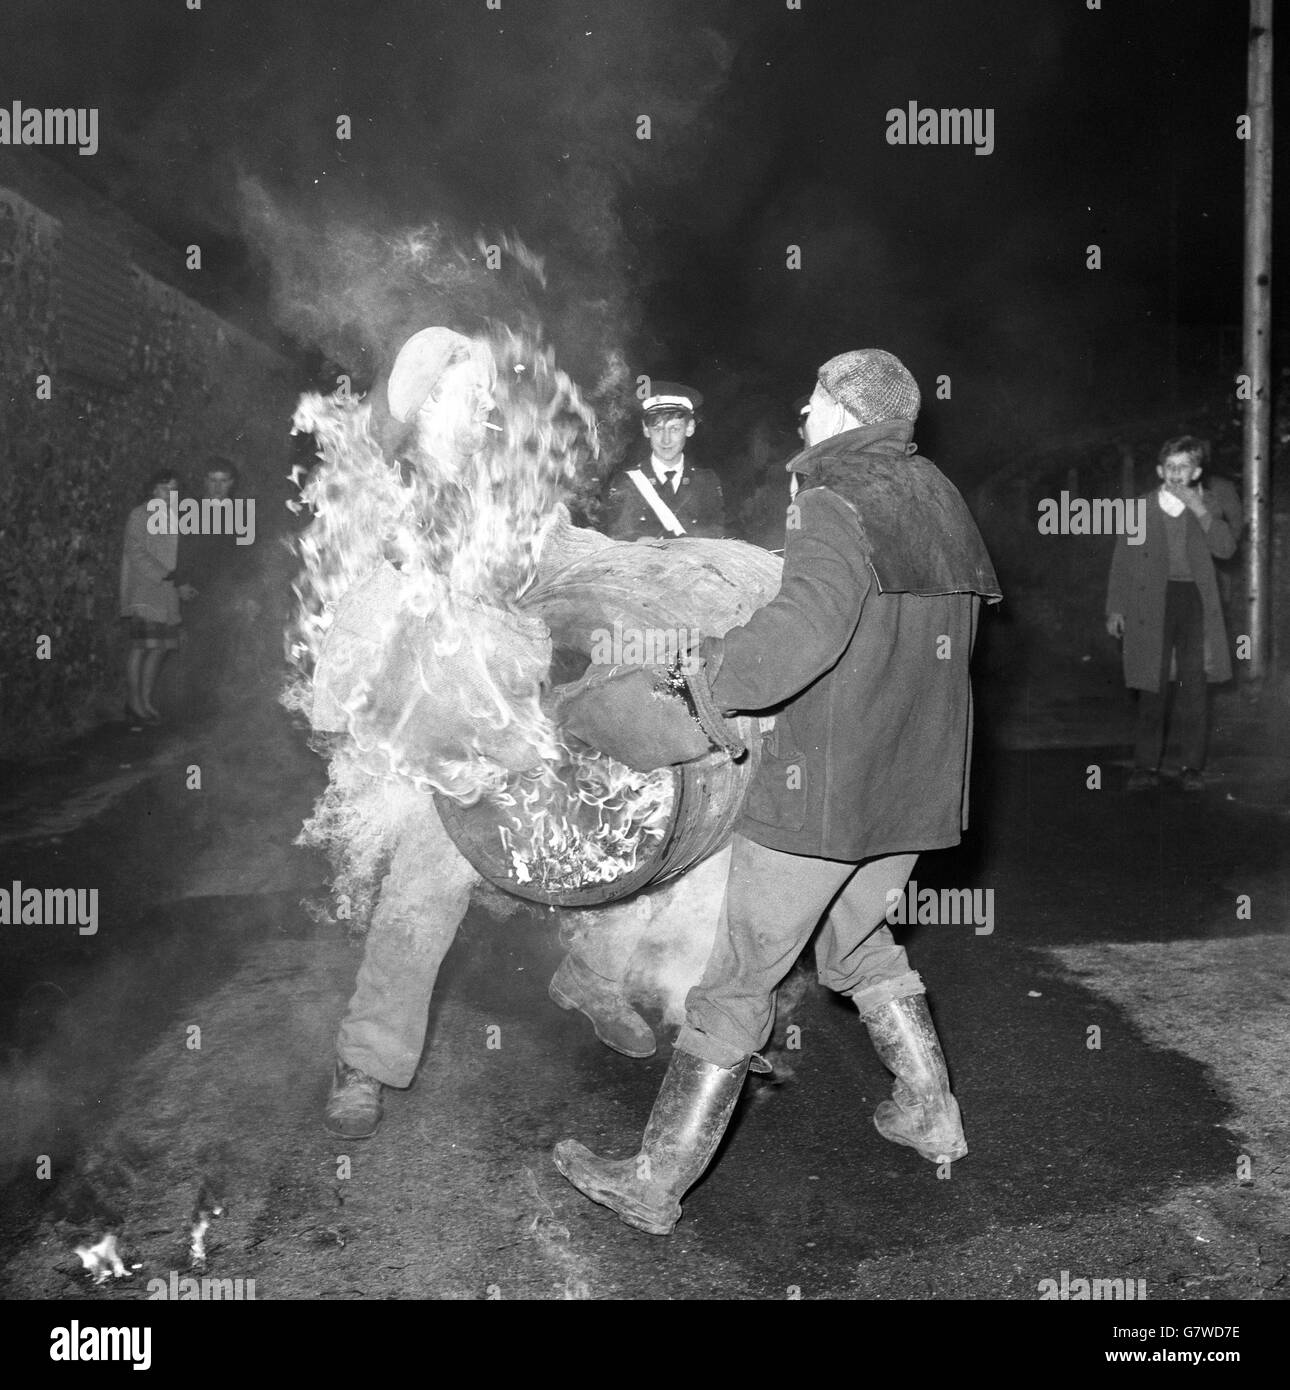 Cerimonia di bruciatura del tar Barrel - Ottery St Mary's. La battaglia inizia quando un uomo cerca di catturare il fardello fiammeggiante da un altro. Foto Stock